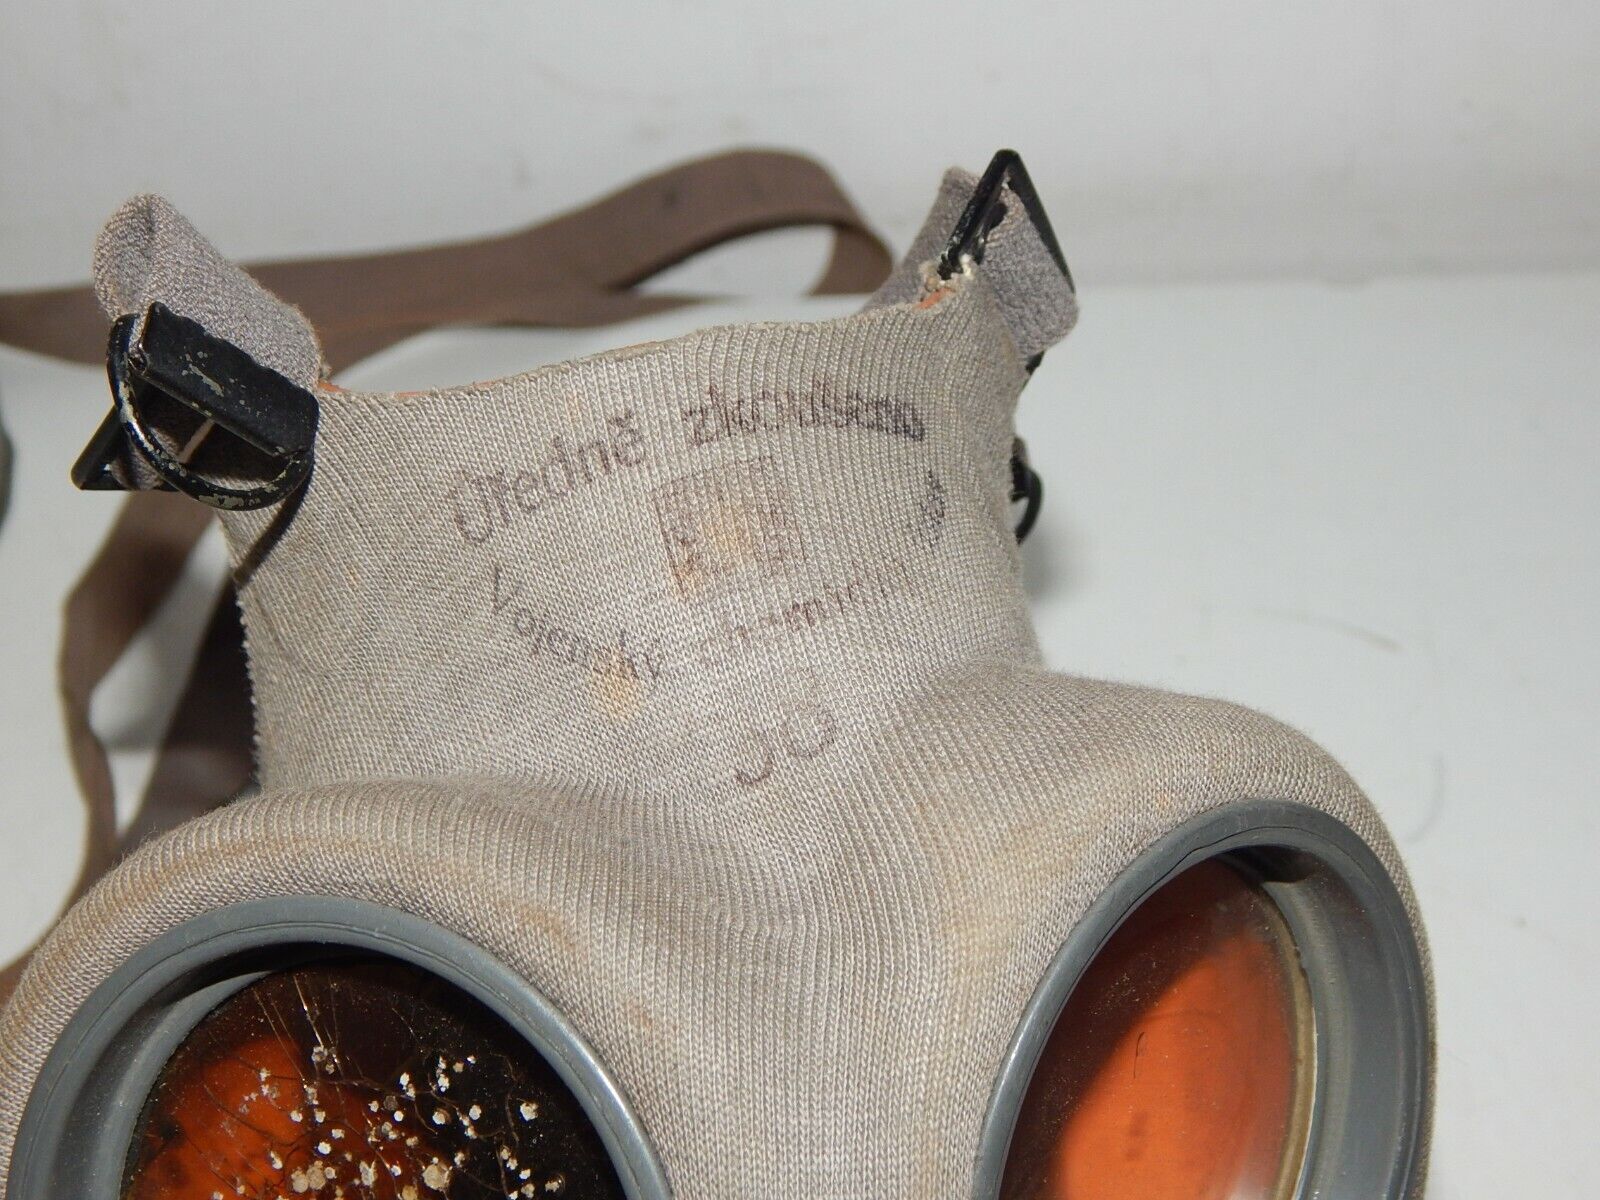 used  KUDRNAC gas mask KM-1a 1938 WW2 WWII